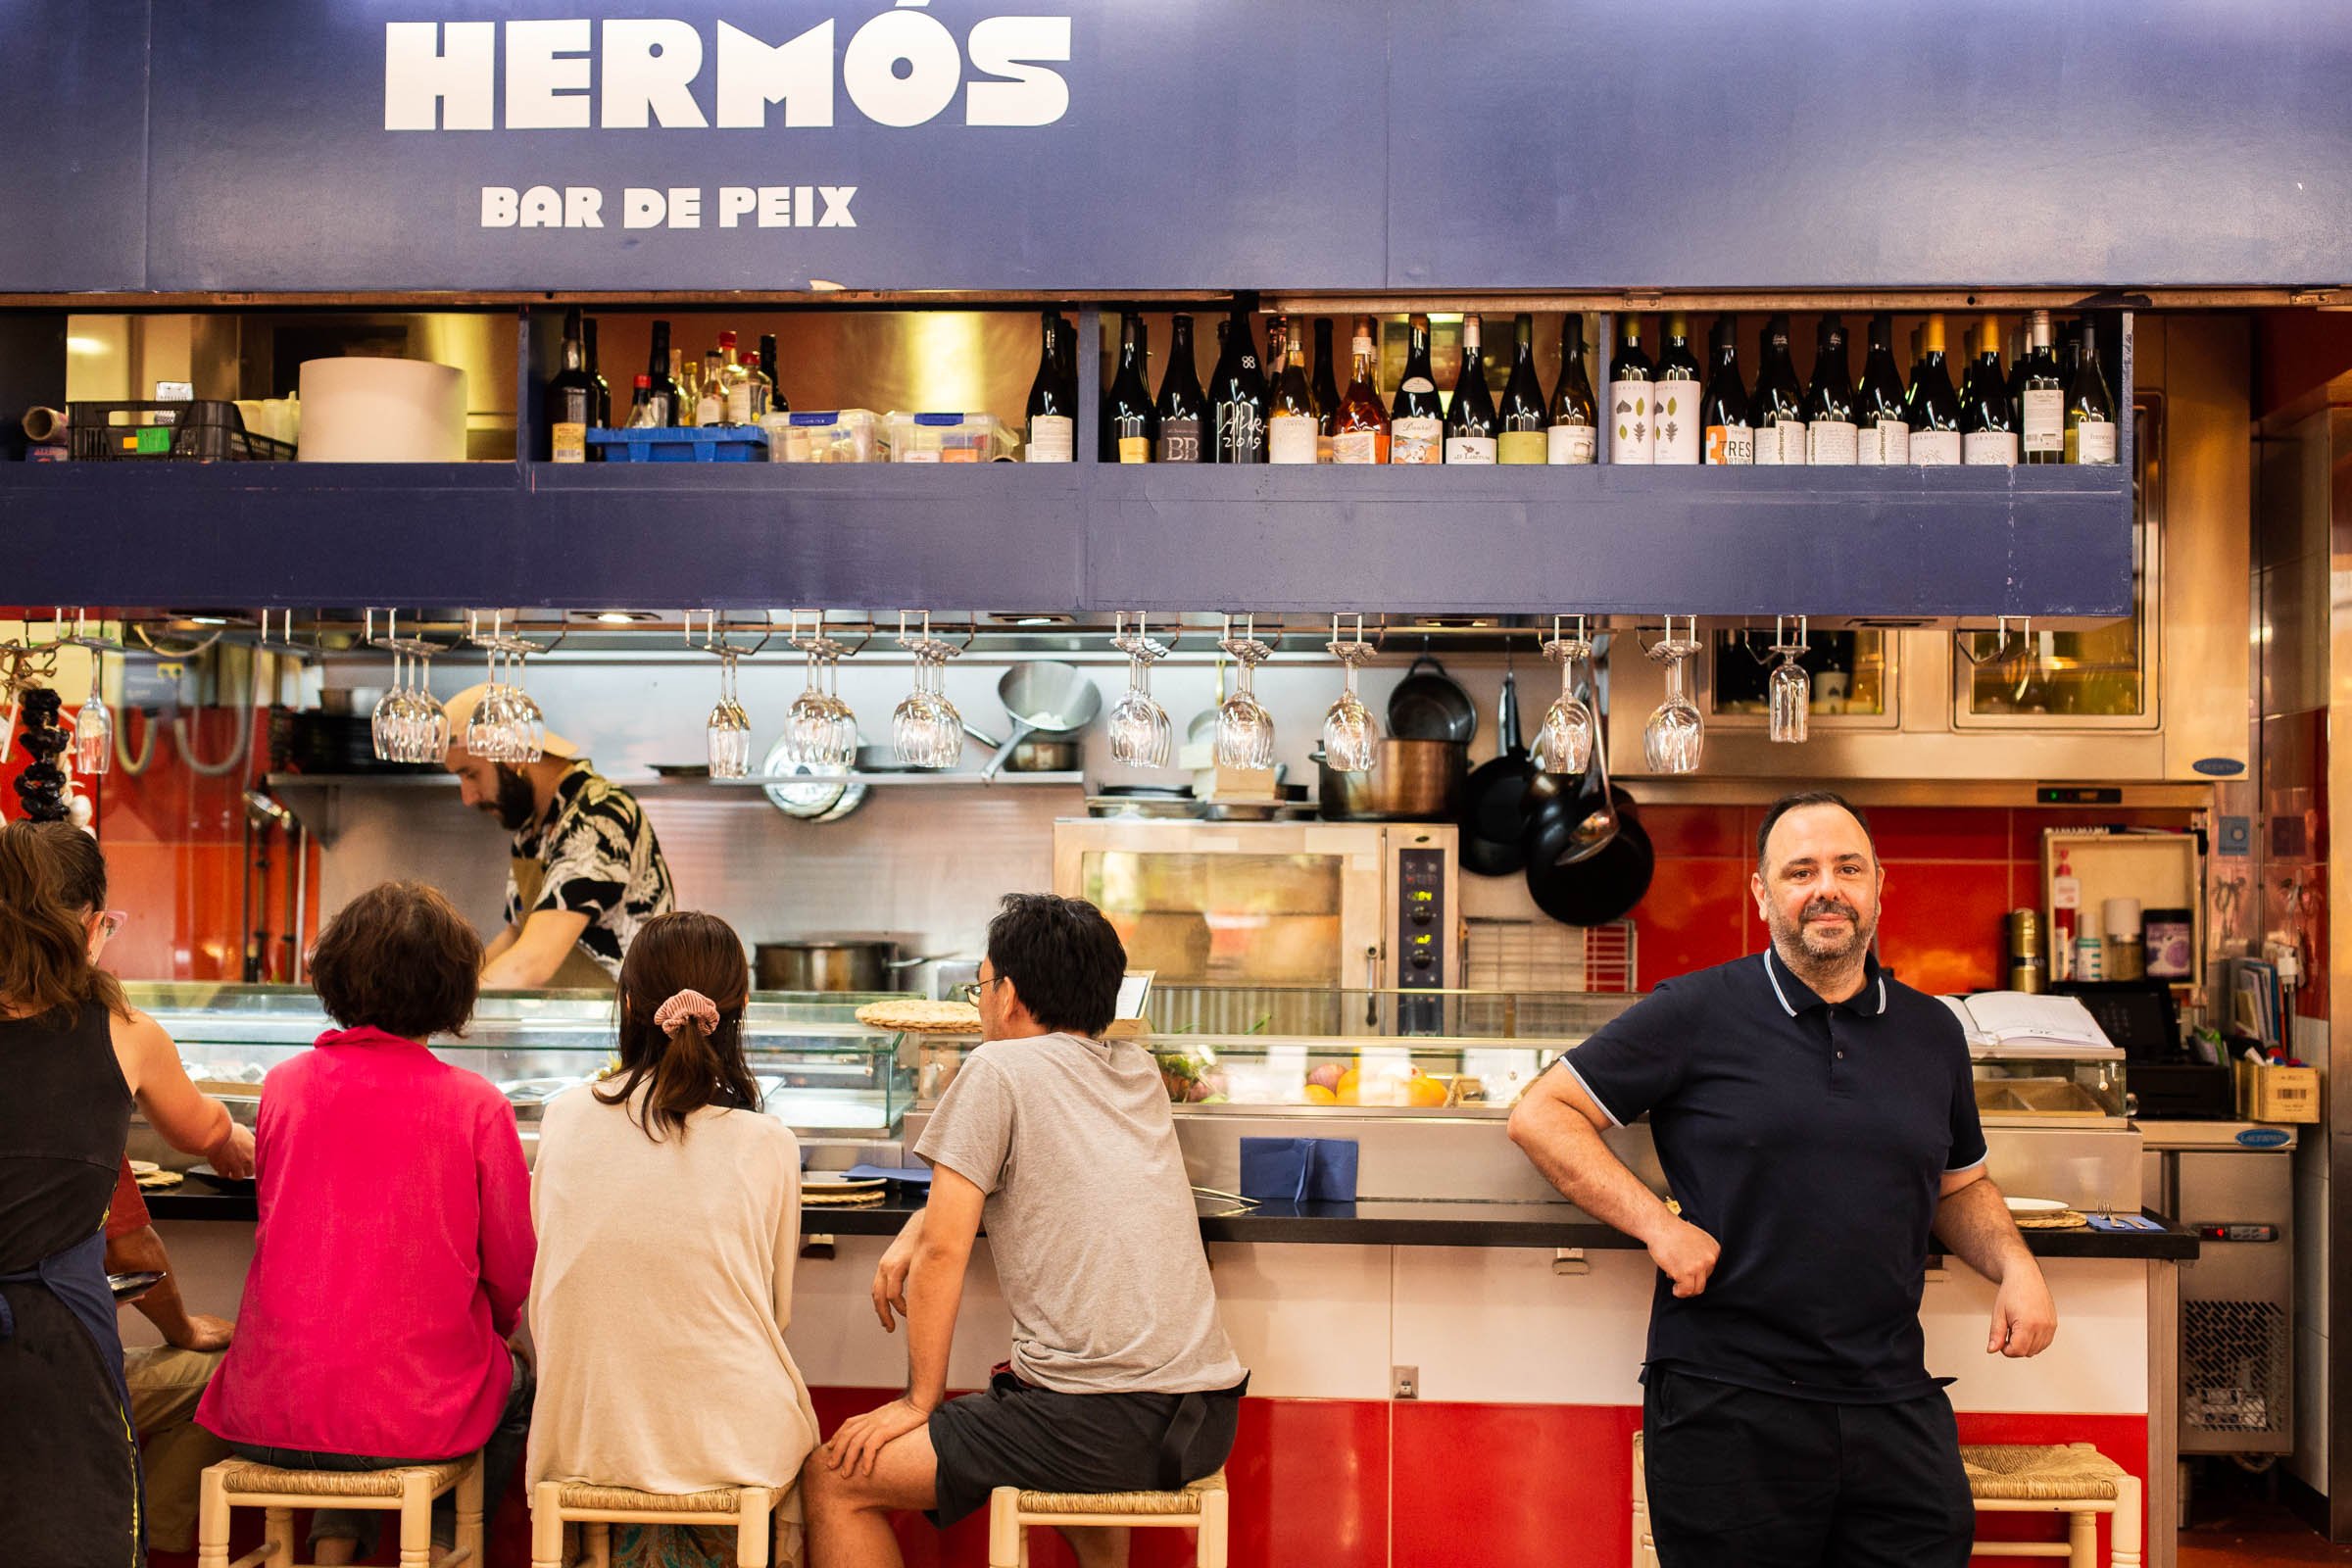 L'Hermòs: una de les millors barres on gaudir de peix i marisc dins un mercat emblemàtic de Barcelona